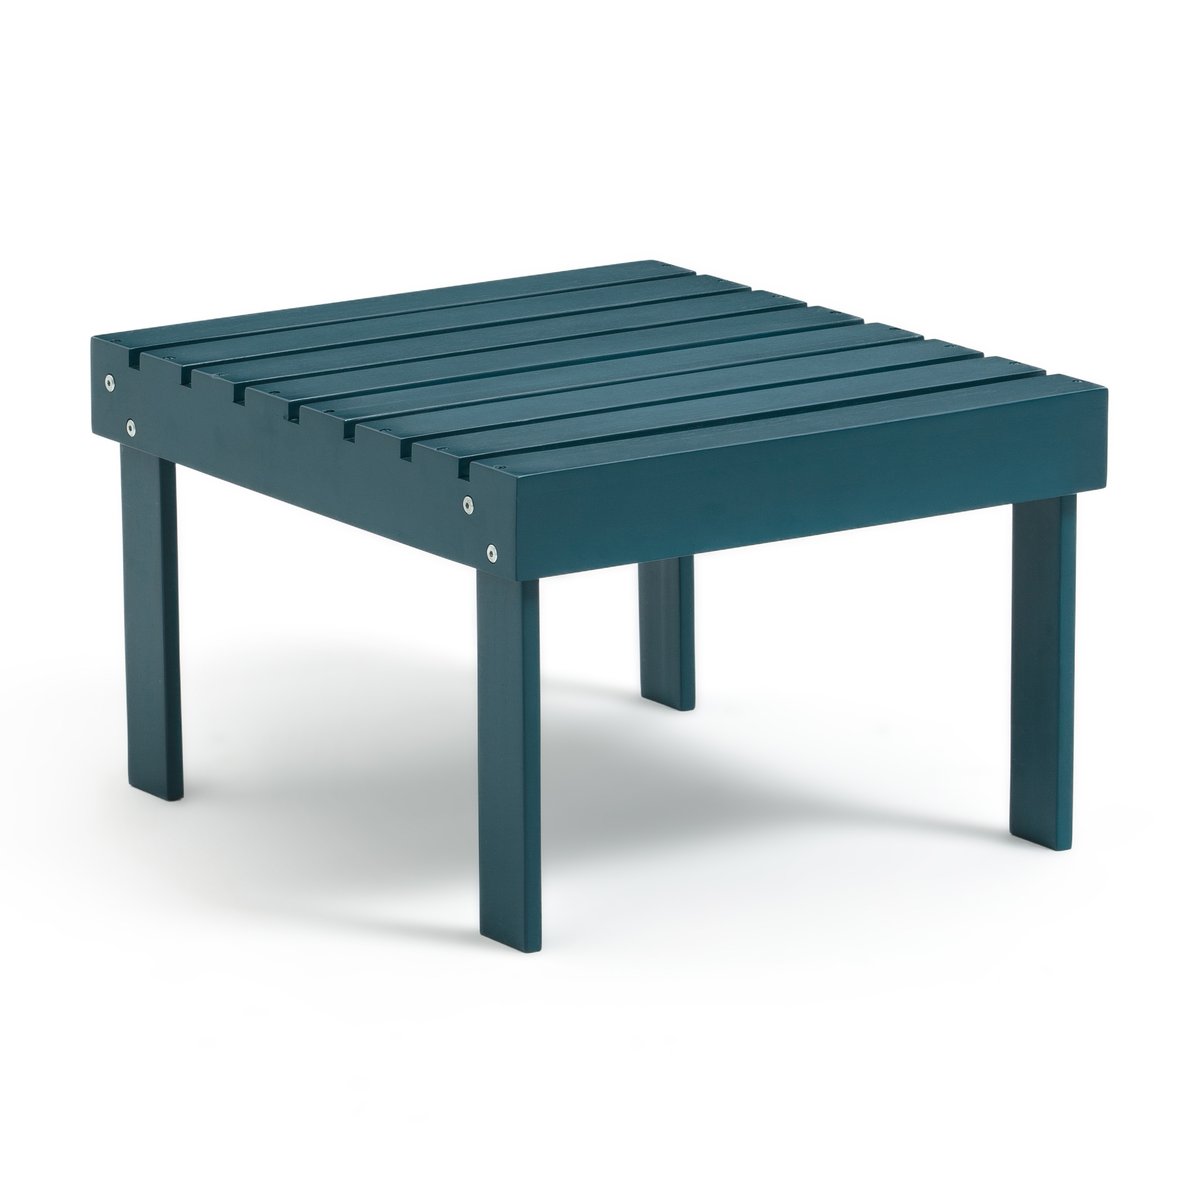 Подставка La Redoute Для ног низкий столик в стиле адирондак Zeda единый размер синий - фото 1